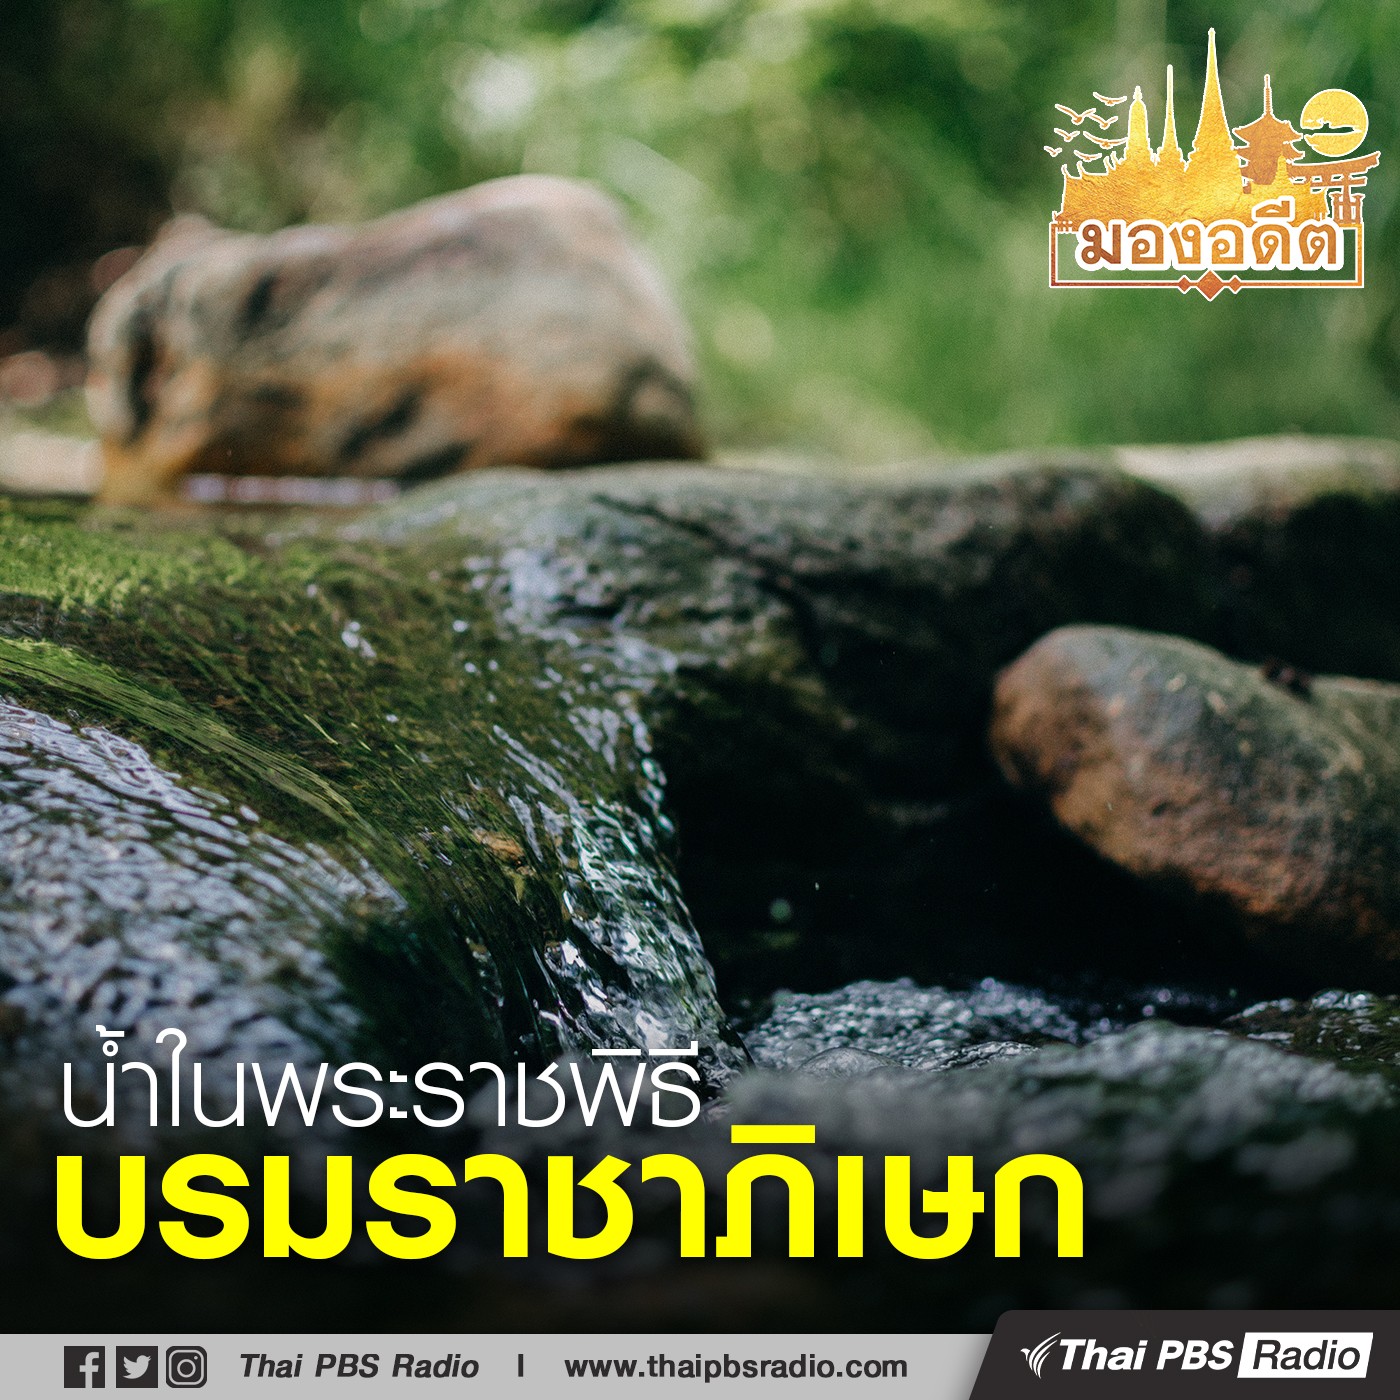 มองอดีต : ความสำคัญของน้ำในพระราชพิธีบรมราชภิเษกพระมหากษัตริย์ไทย ตอน�